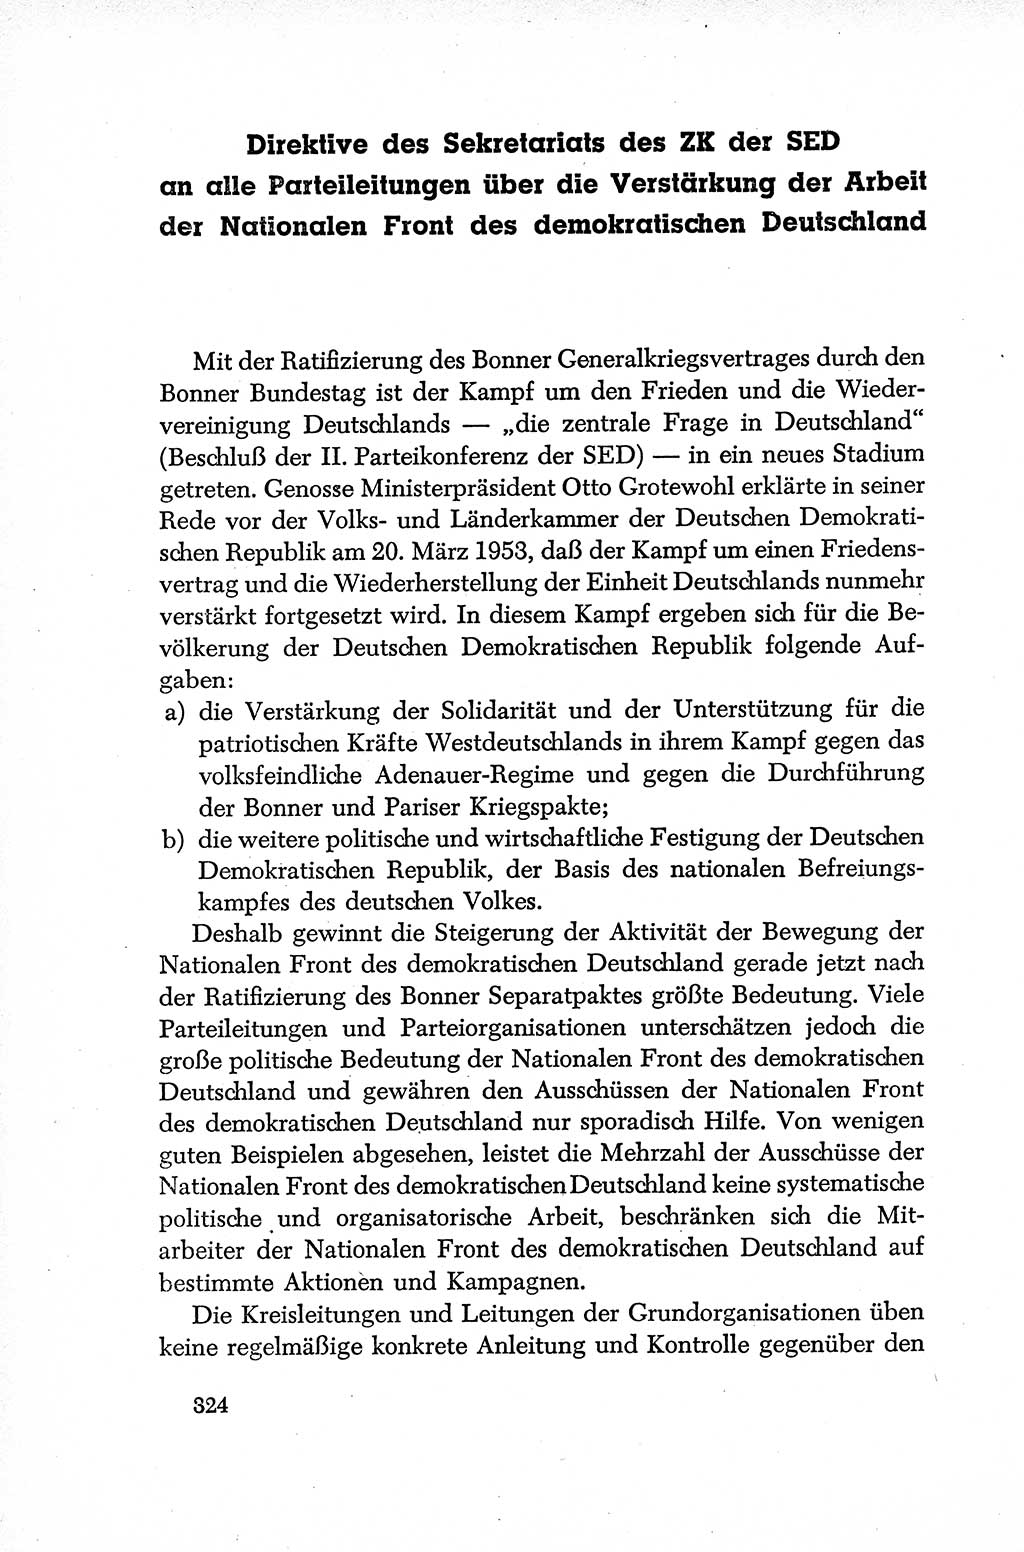 Dokumente der Sozialistischen Einheitspartei Deutschlands (SED) [Deutsche Demokratische Republik (DDR)] 1952-1953, Seite 324 (Dok. SED DDR 1952-1953, S. 324)